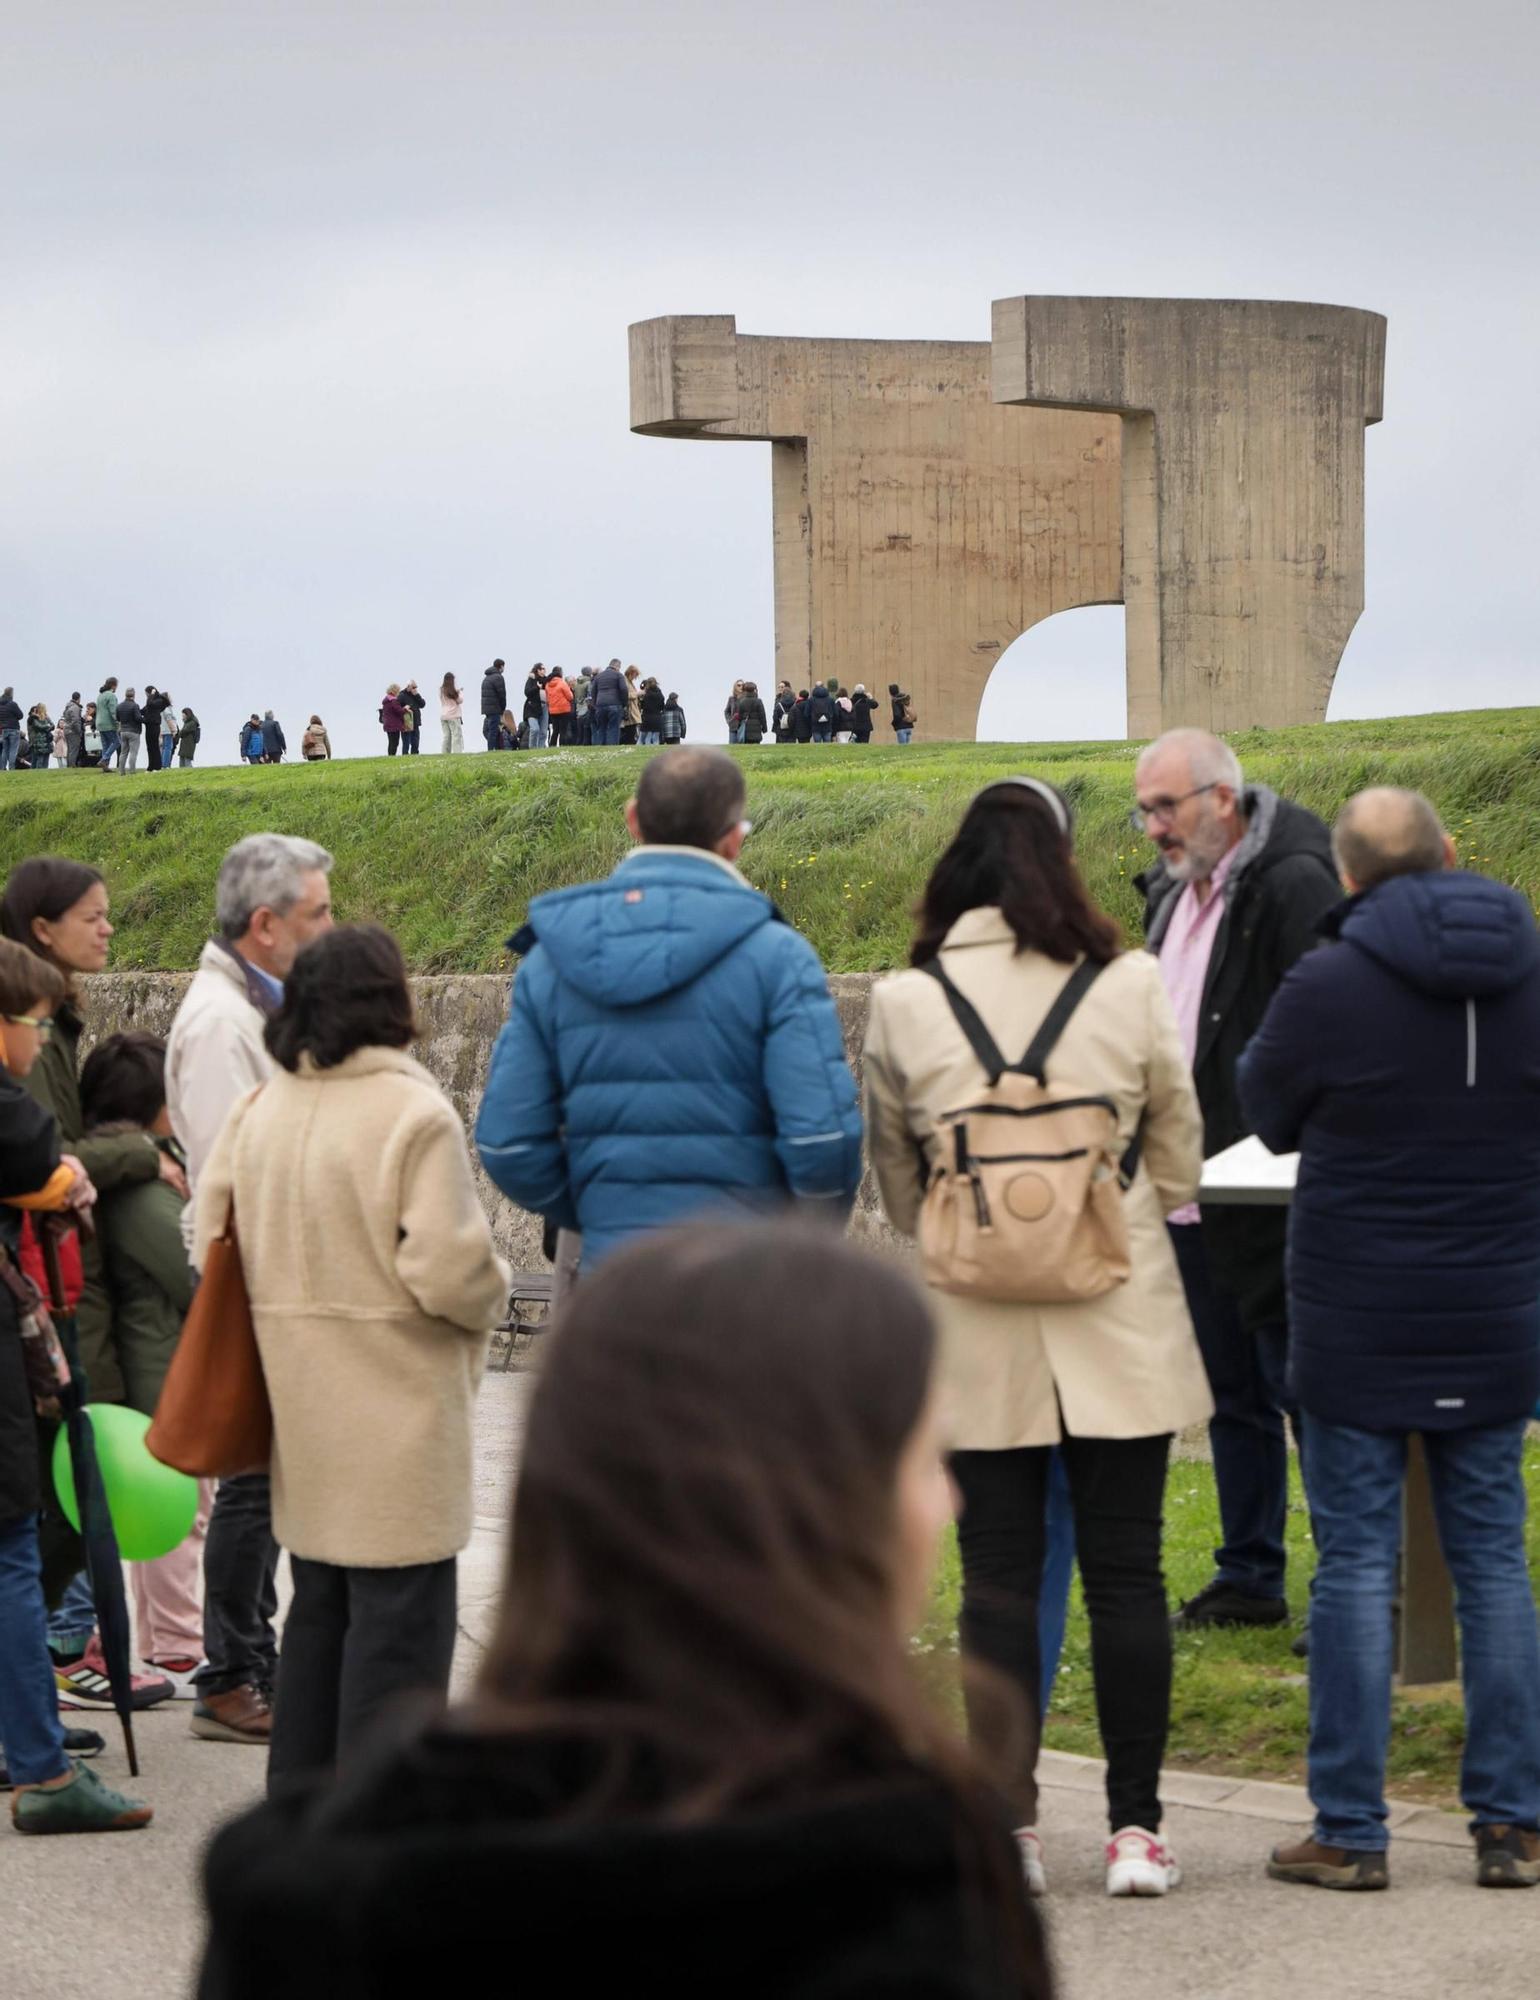 El ambiente en Gijón de Semana Santa, con múltiples actividades (en imágenes)